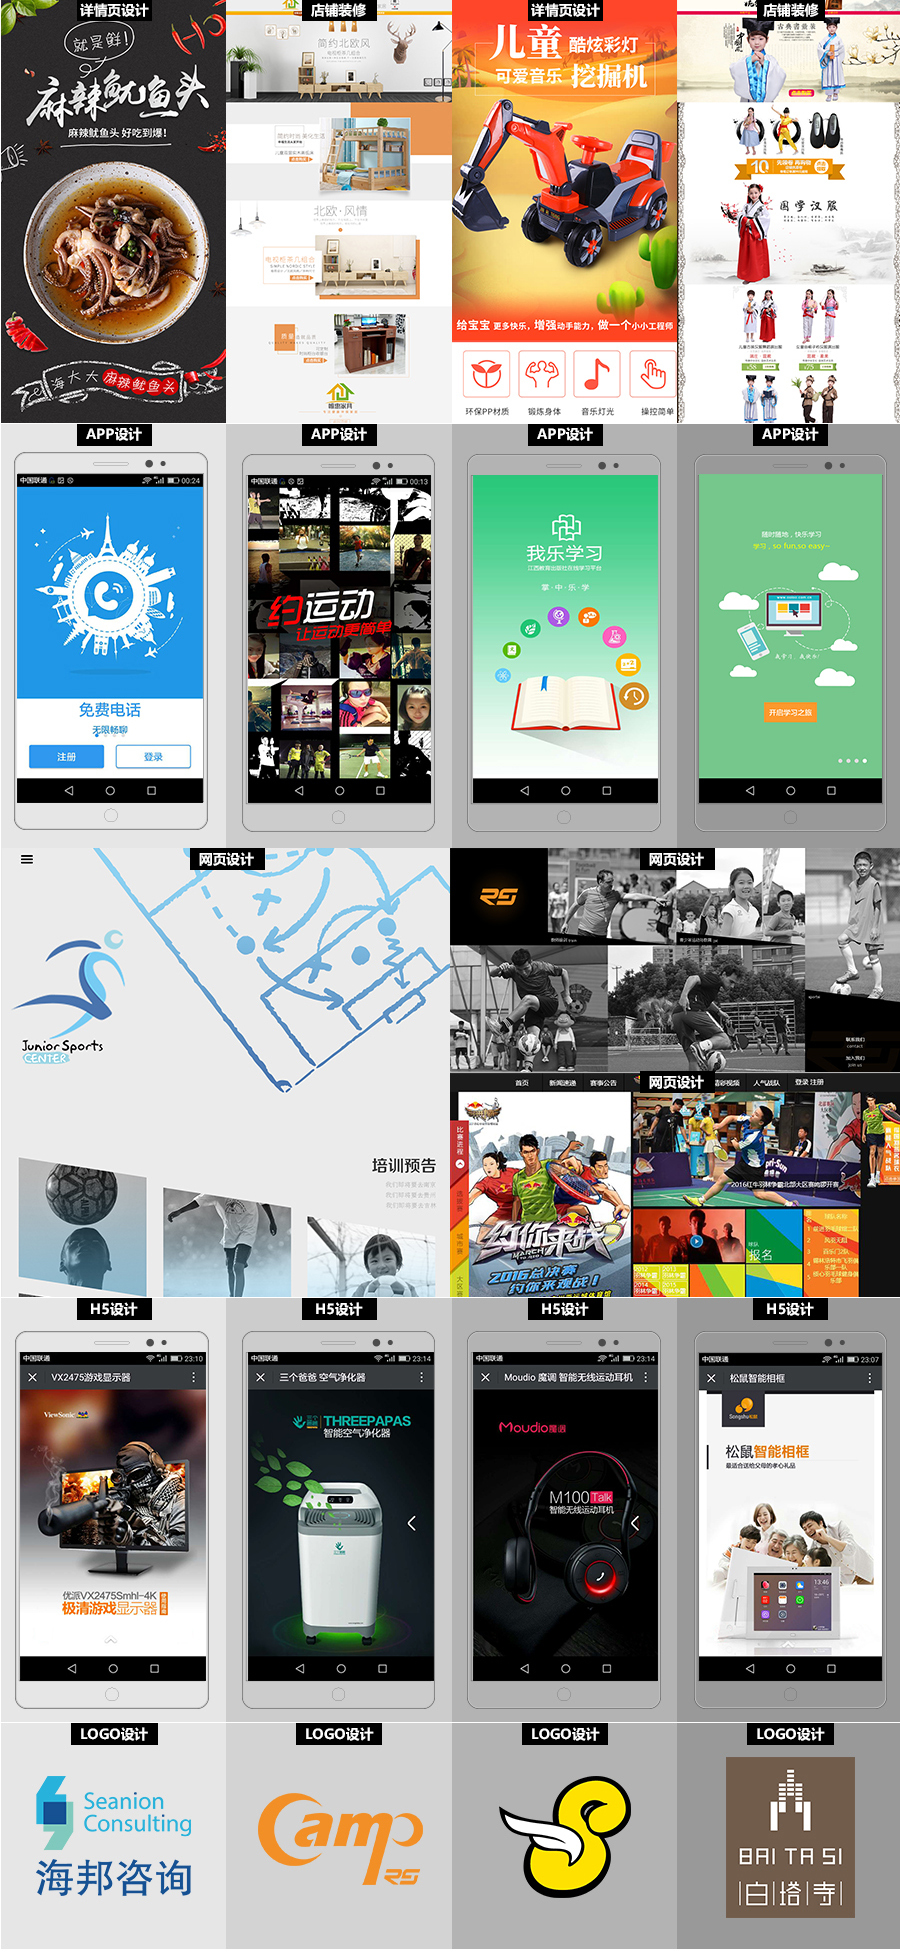 淘宝美工鼻尖网页设计 app设计  平面设计 H5设计作品